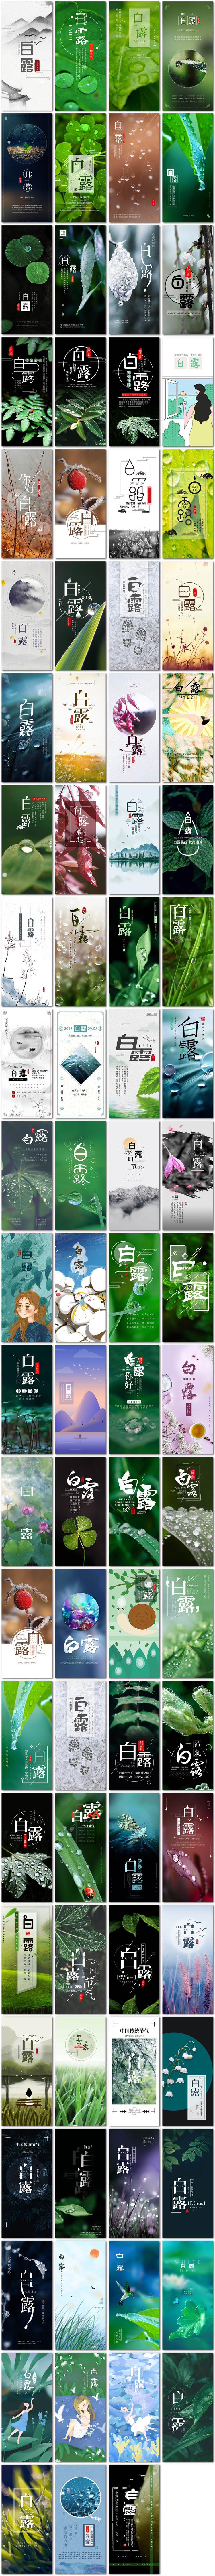 白露二十四节气24中国传统节日微信手机h5海报psd模板素材设计